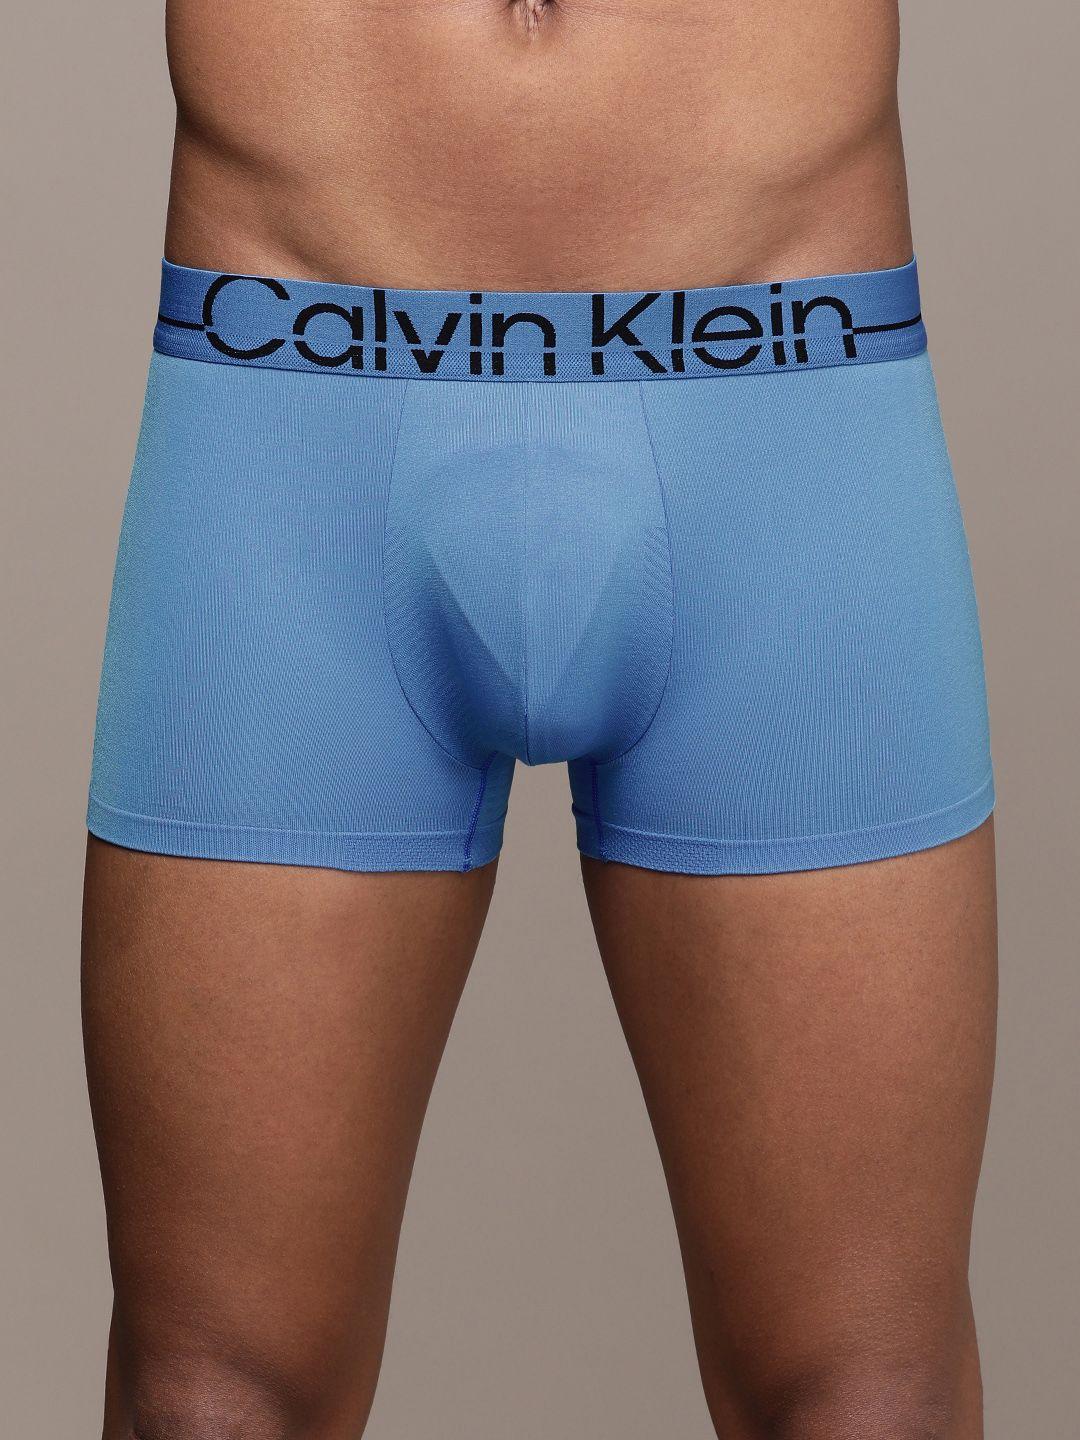 calvin klein underwear men sky blue typographic printed trunk nb3031c2p